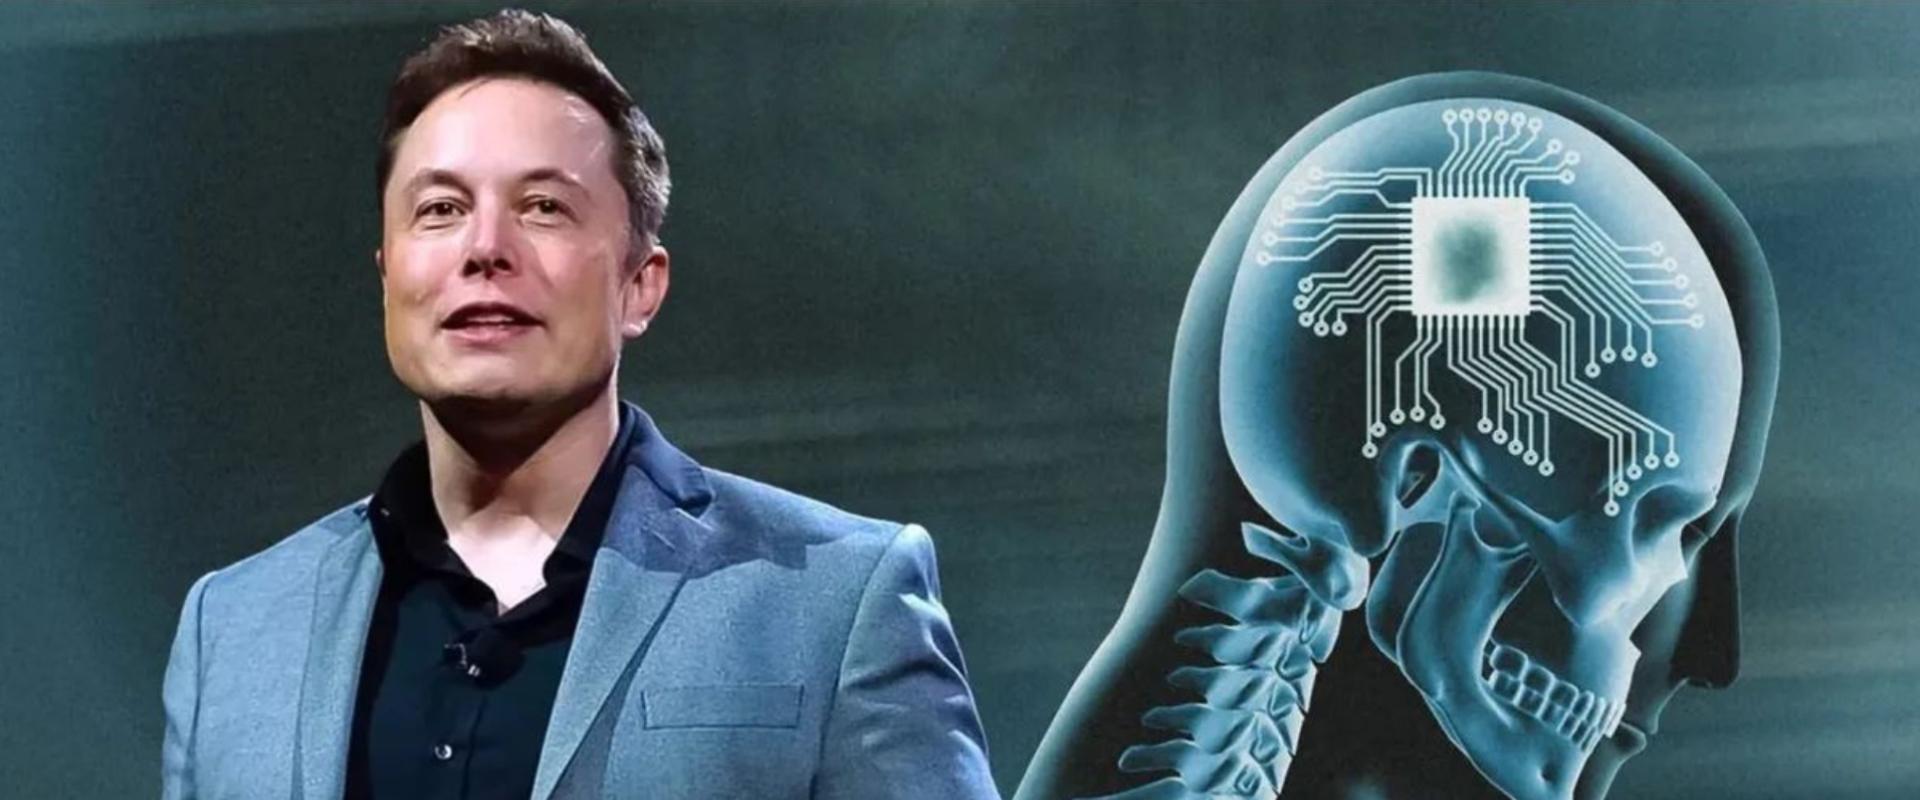 Probléma lépett fel Elon Musk első emberi agyba ültetett Neuralinkjével